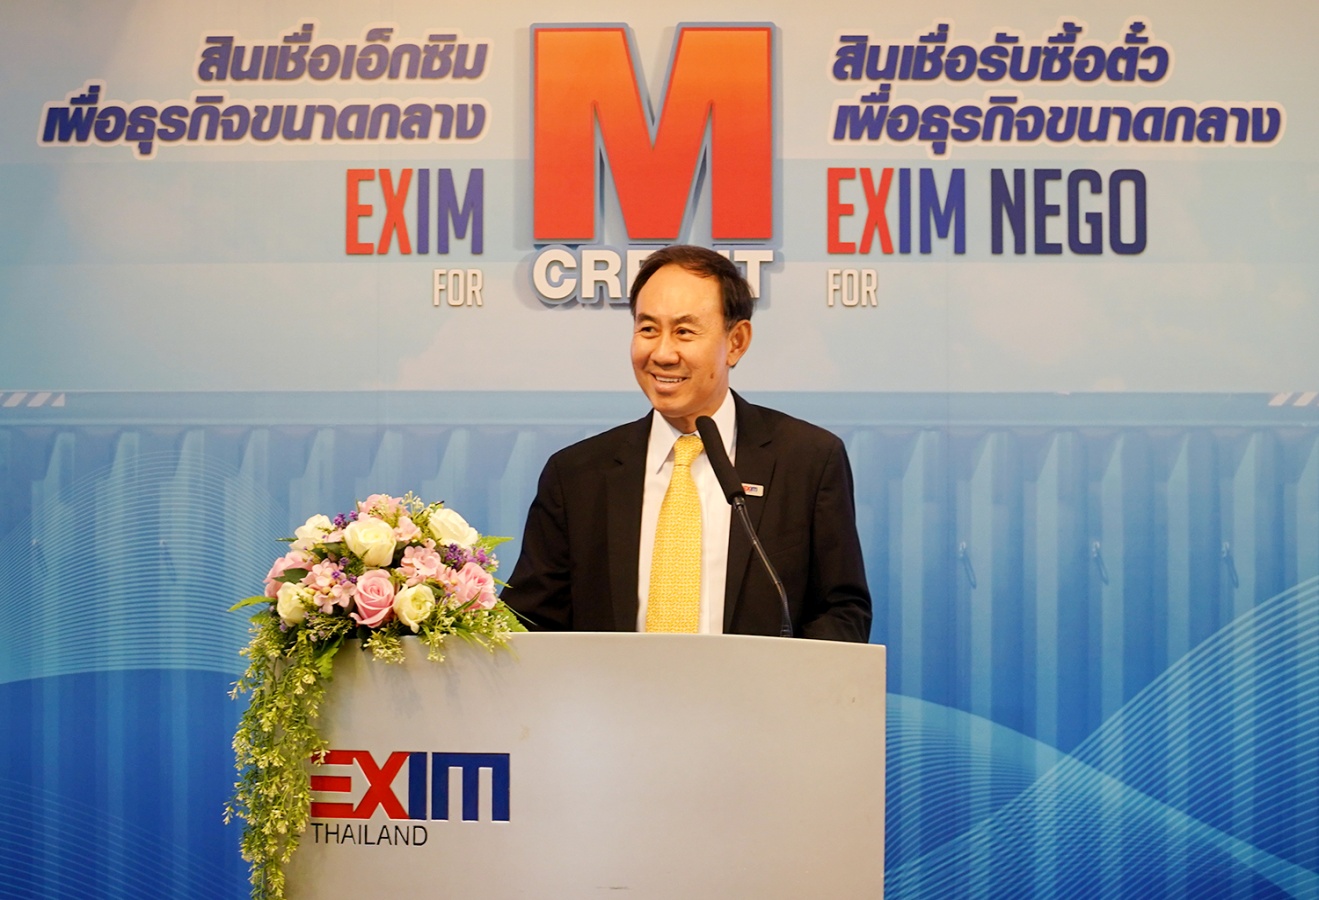 EXIM BANK เปิดตัวสินเชื่อเสริมสภาพคล่องและป้องกันความเสี่ยงอัตราแลกเปลี่ยน สนับสนุนผู้ส่งออกขนาดกลางขับเคลื่อนการเติบโตของภาคการส่งออกไทย